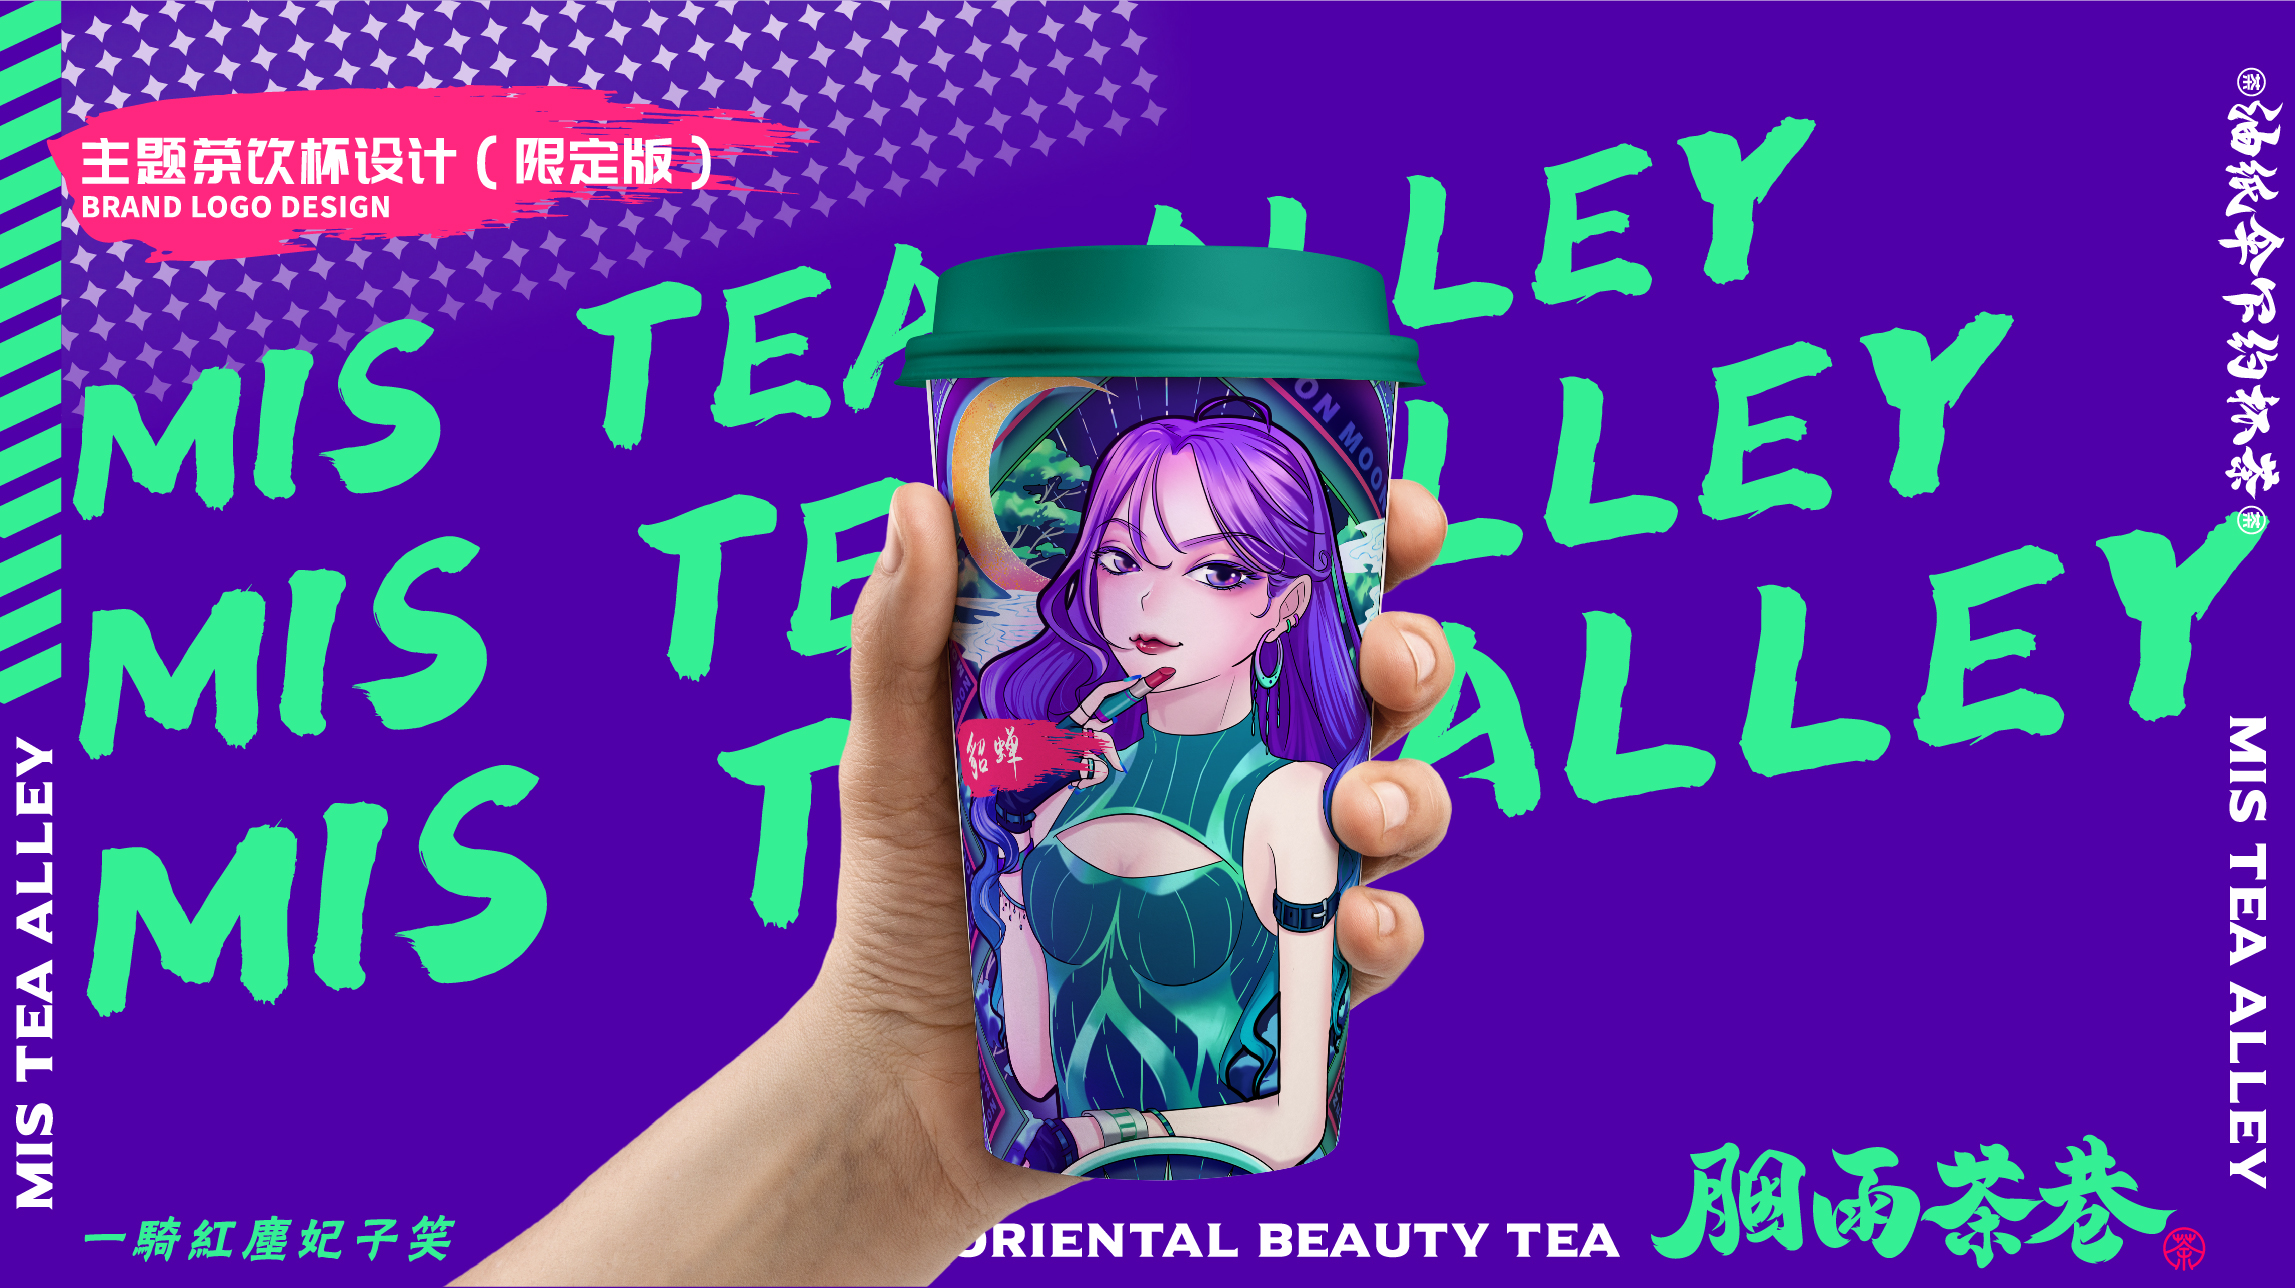 茶饮品牌胭雨茶巷主题杯VI设计